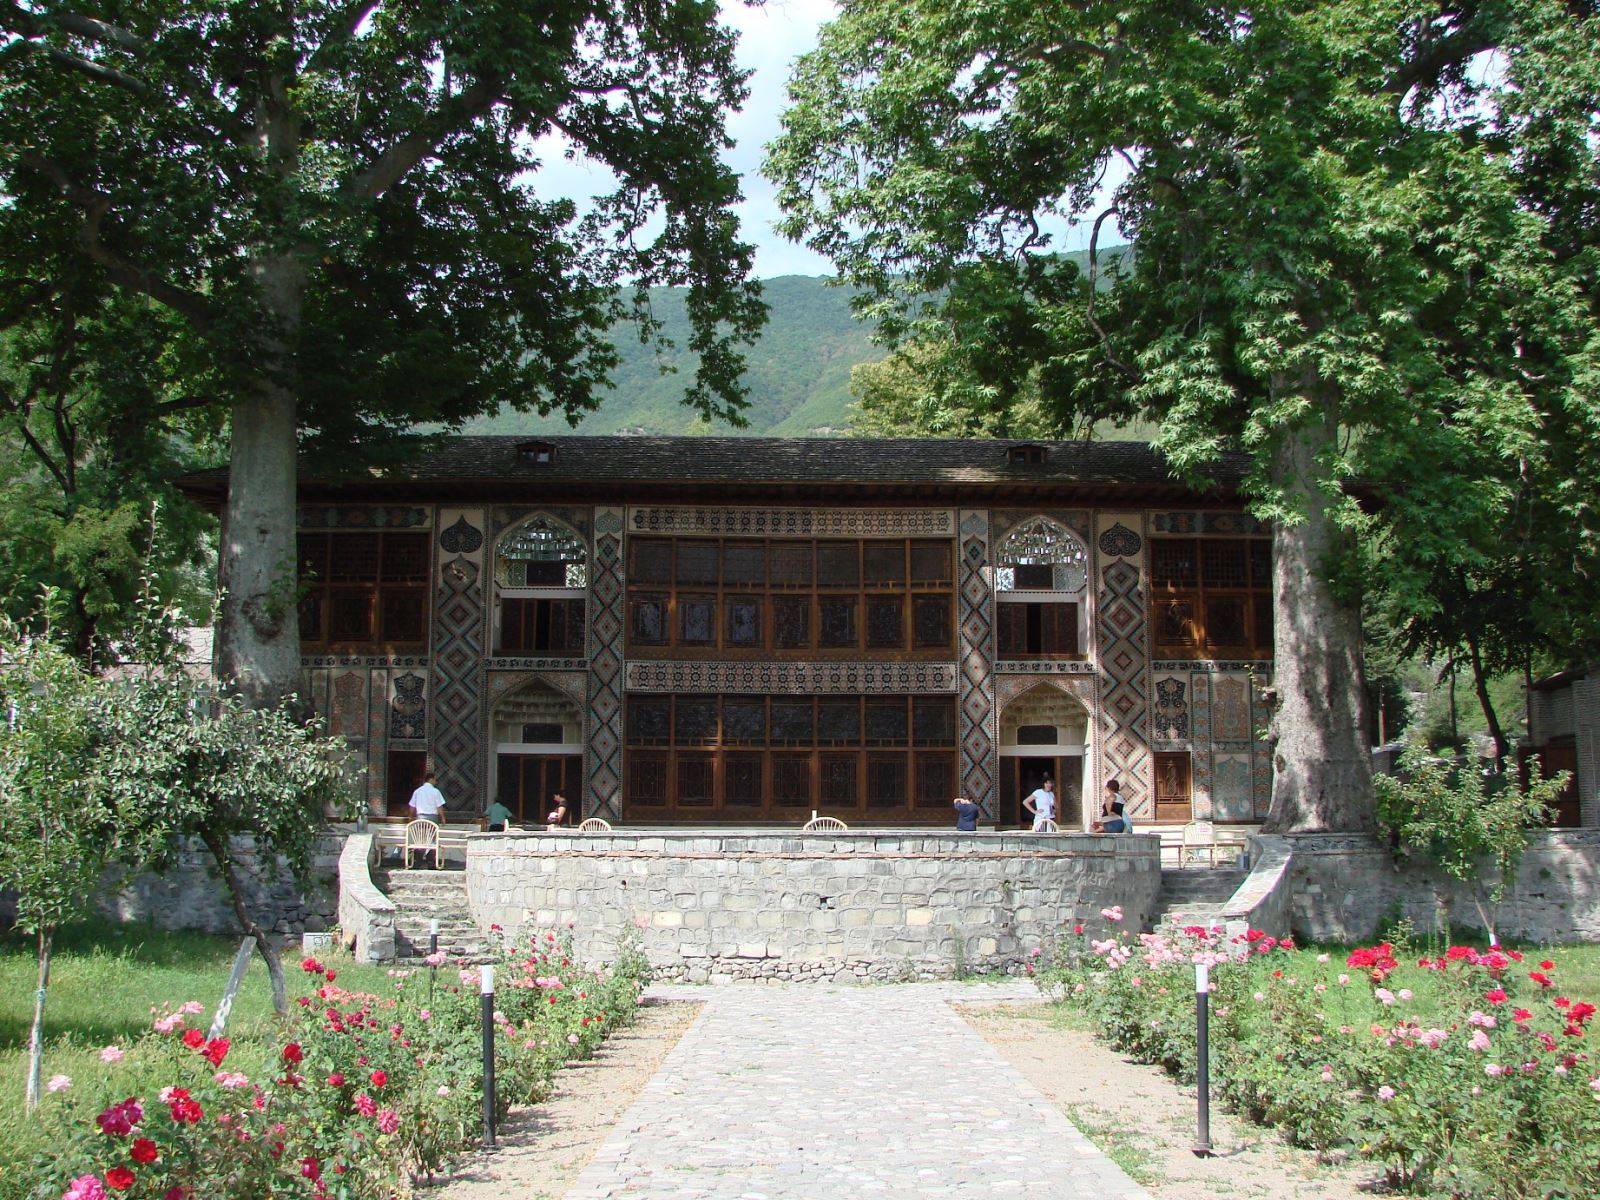 Palace of Sheki Khan